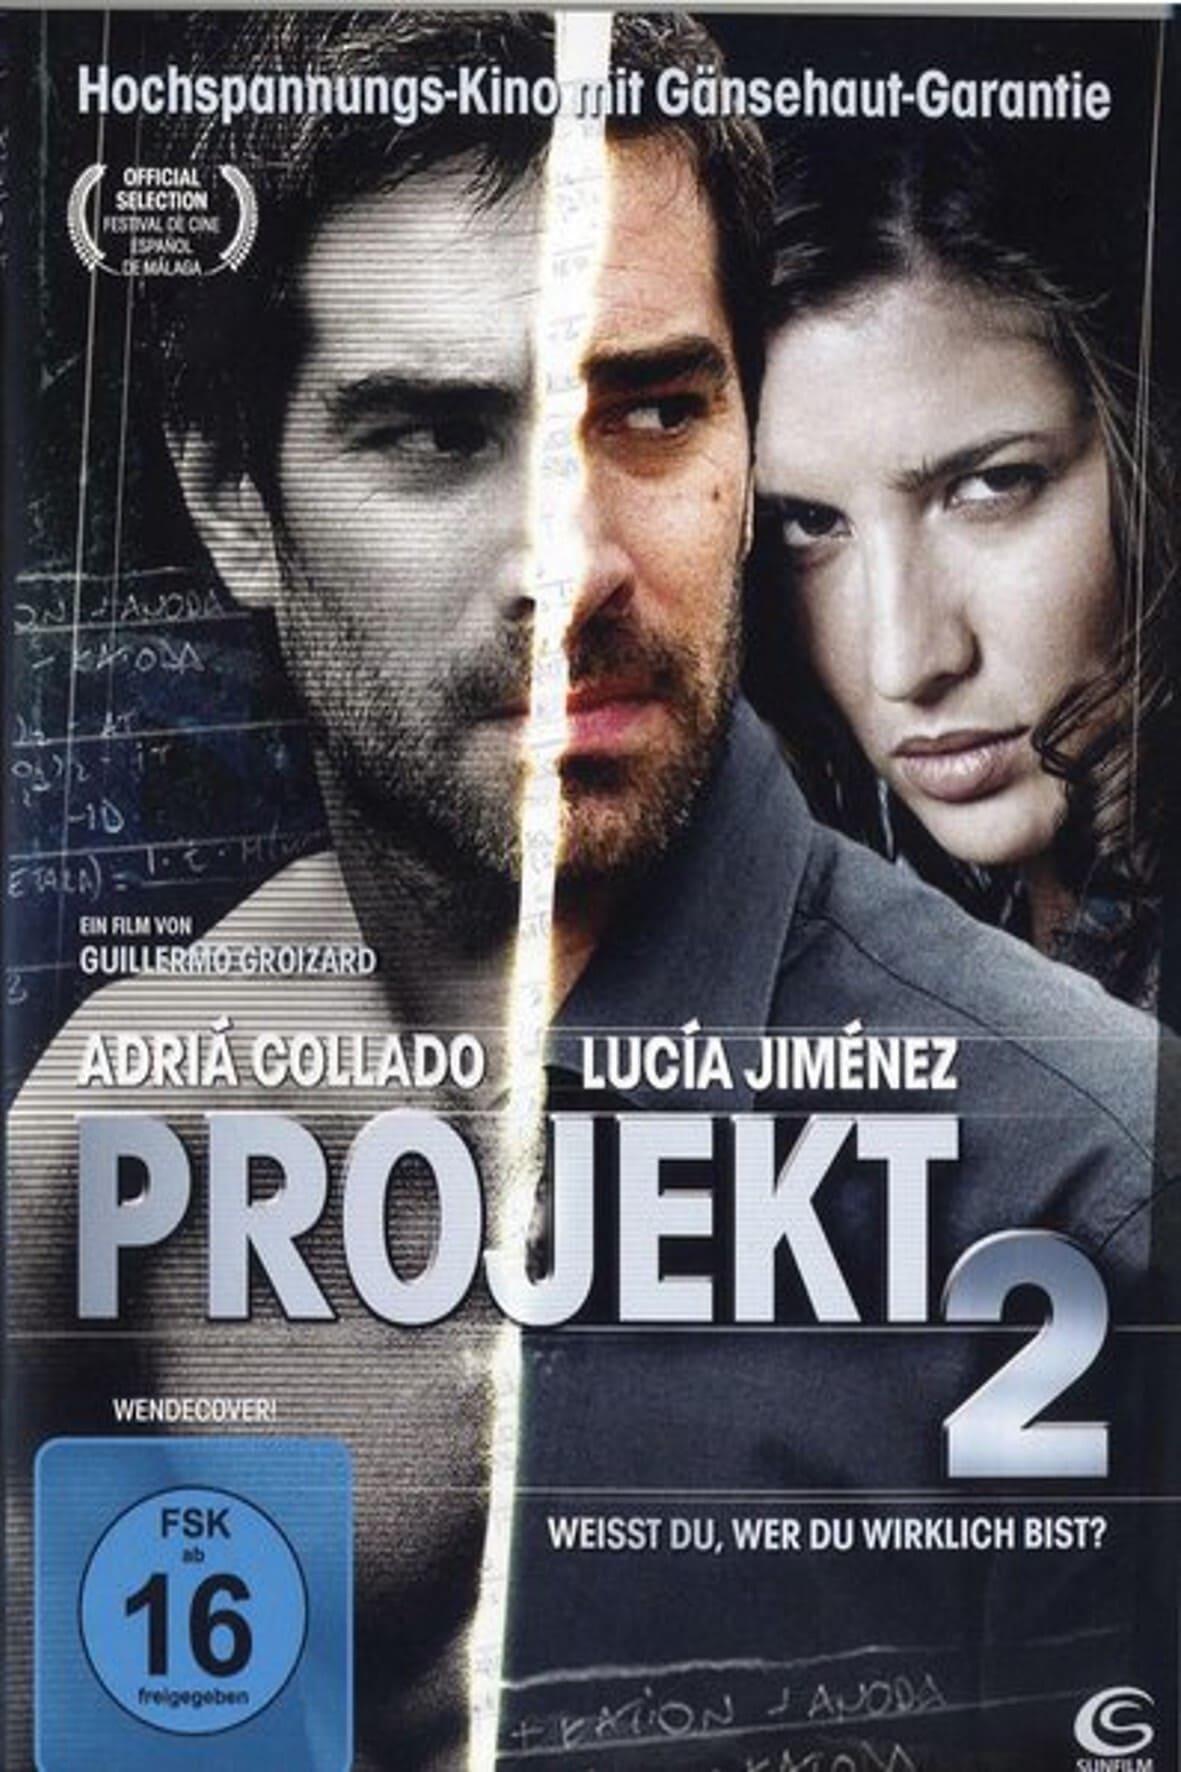 Projekt 2 poster